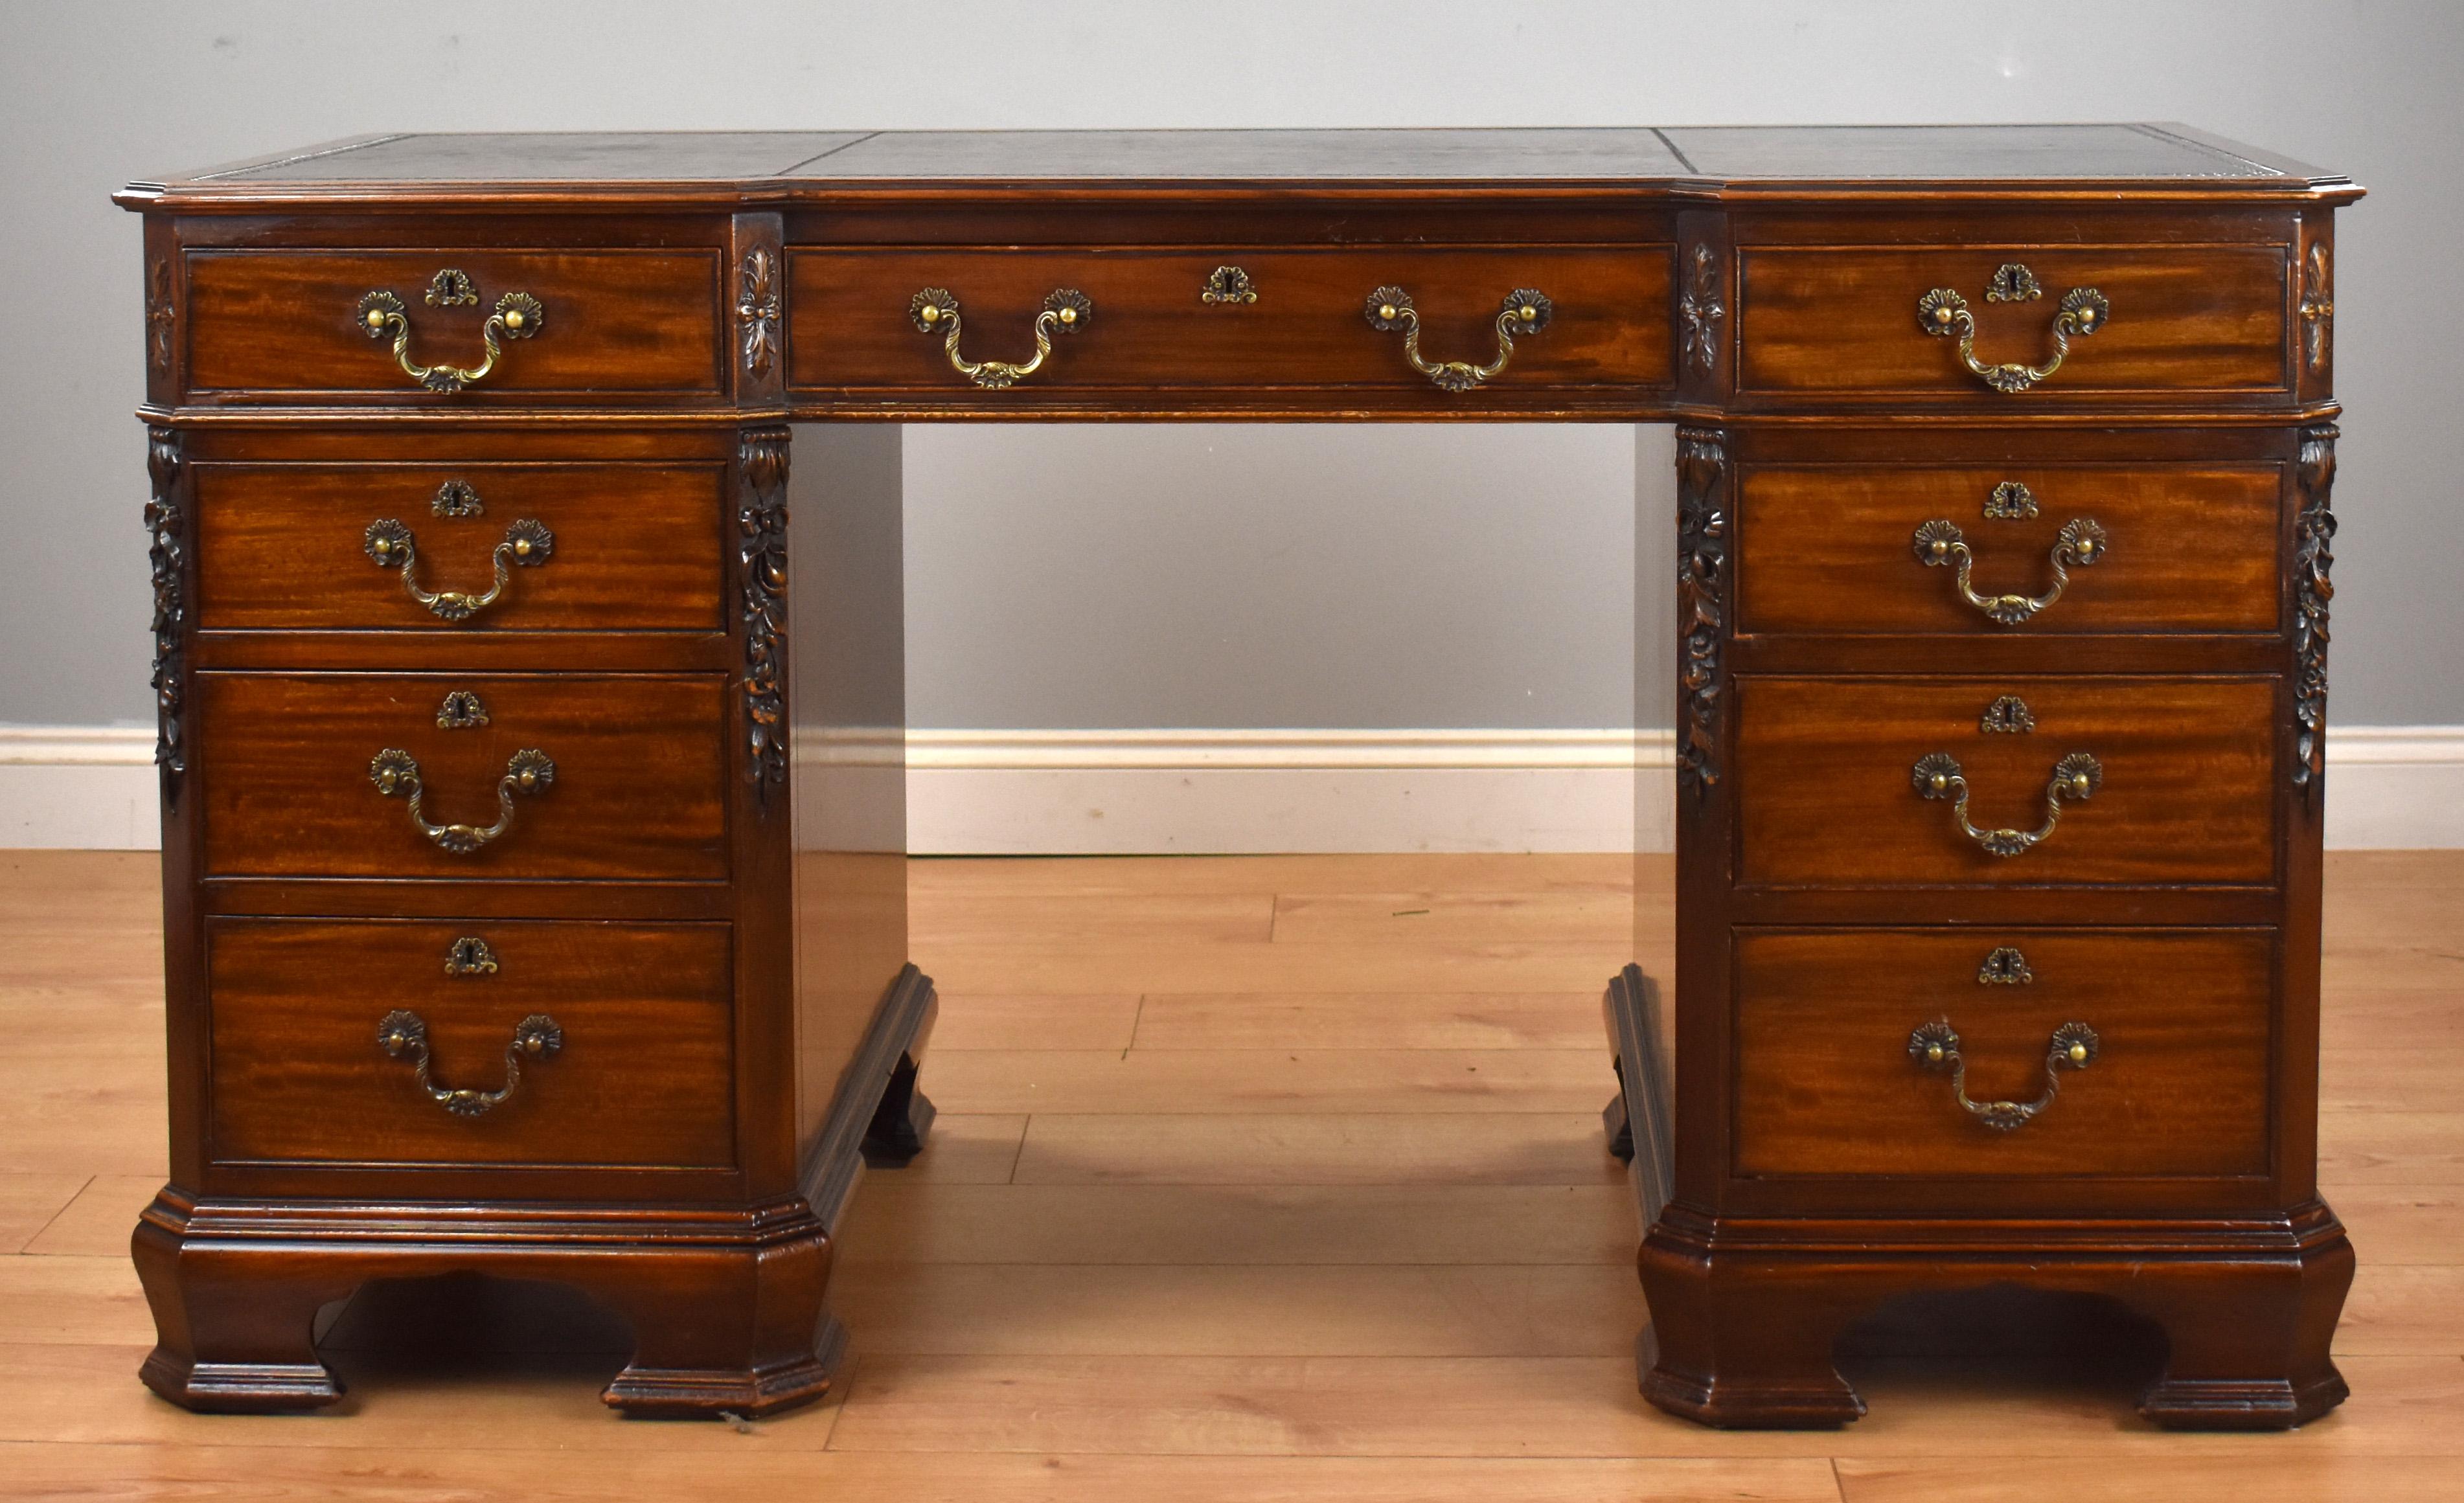 Zum Verkauf steht ein hochwertiger Schreibtisch im Chippendale-Stil aus dem 19. Jahrhundert mit einer braunen Ledereinlage über drei Schubladen in der Platte. Die Platte passt auf zwei Sockel, die jeweils drei abgestufte Schubladen enthalten. Der